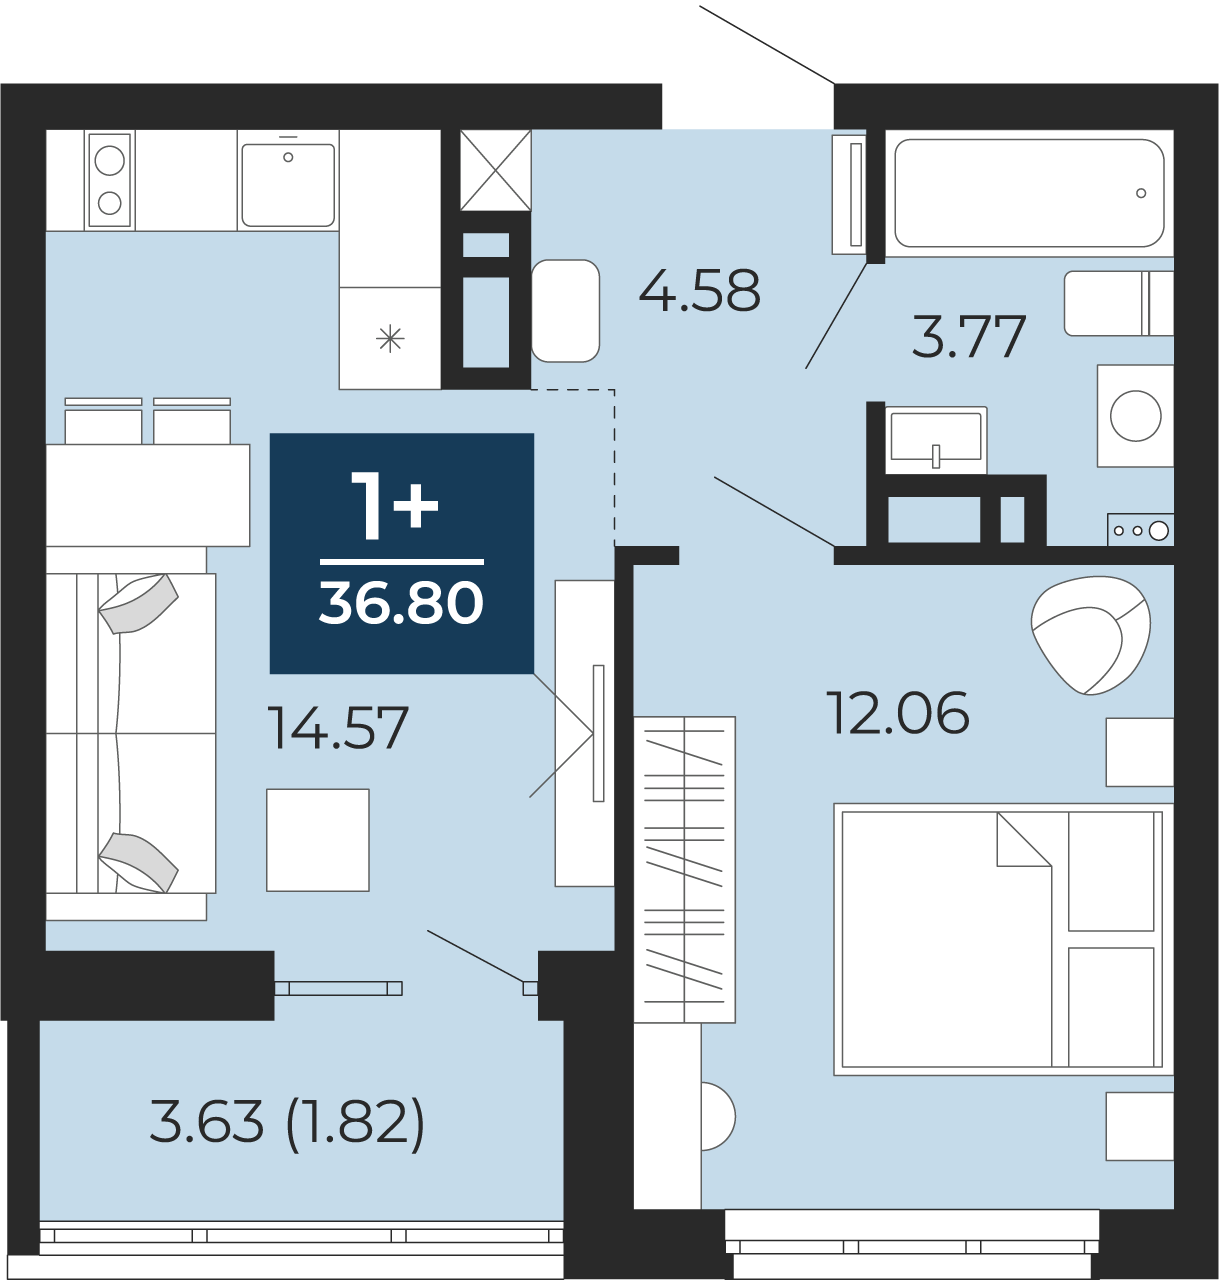 Квартира № 375, 1-комнатная, 36.8 кв. м, 6 этаж